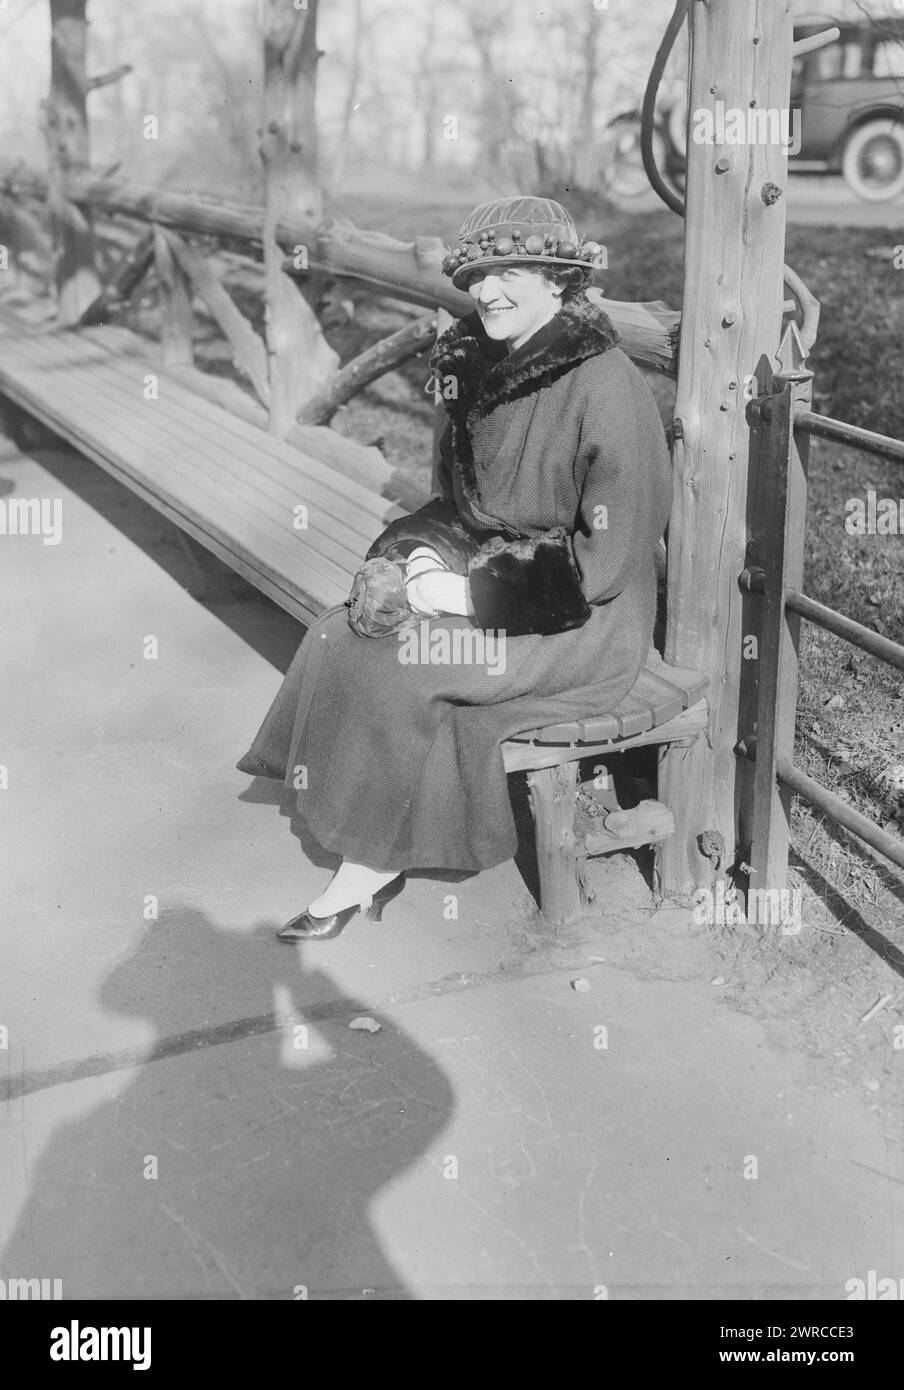 Jardon, la fotografia mostra Dorothy Jardon (1883?-1966), un'attrice e cantante americana, probabilmente a Central Park, New York. L'ombra del fotografo è visibile nell'immagine., 1919 feb. 28, Glass negatives, 1 negative: Glass Foto Stock